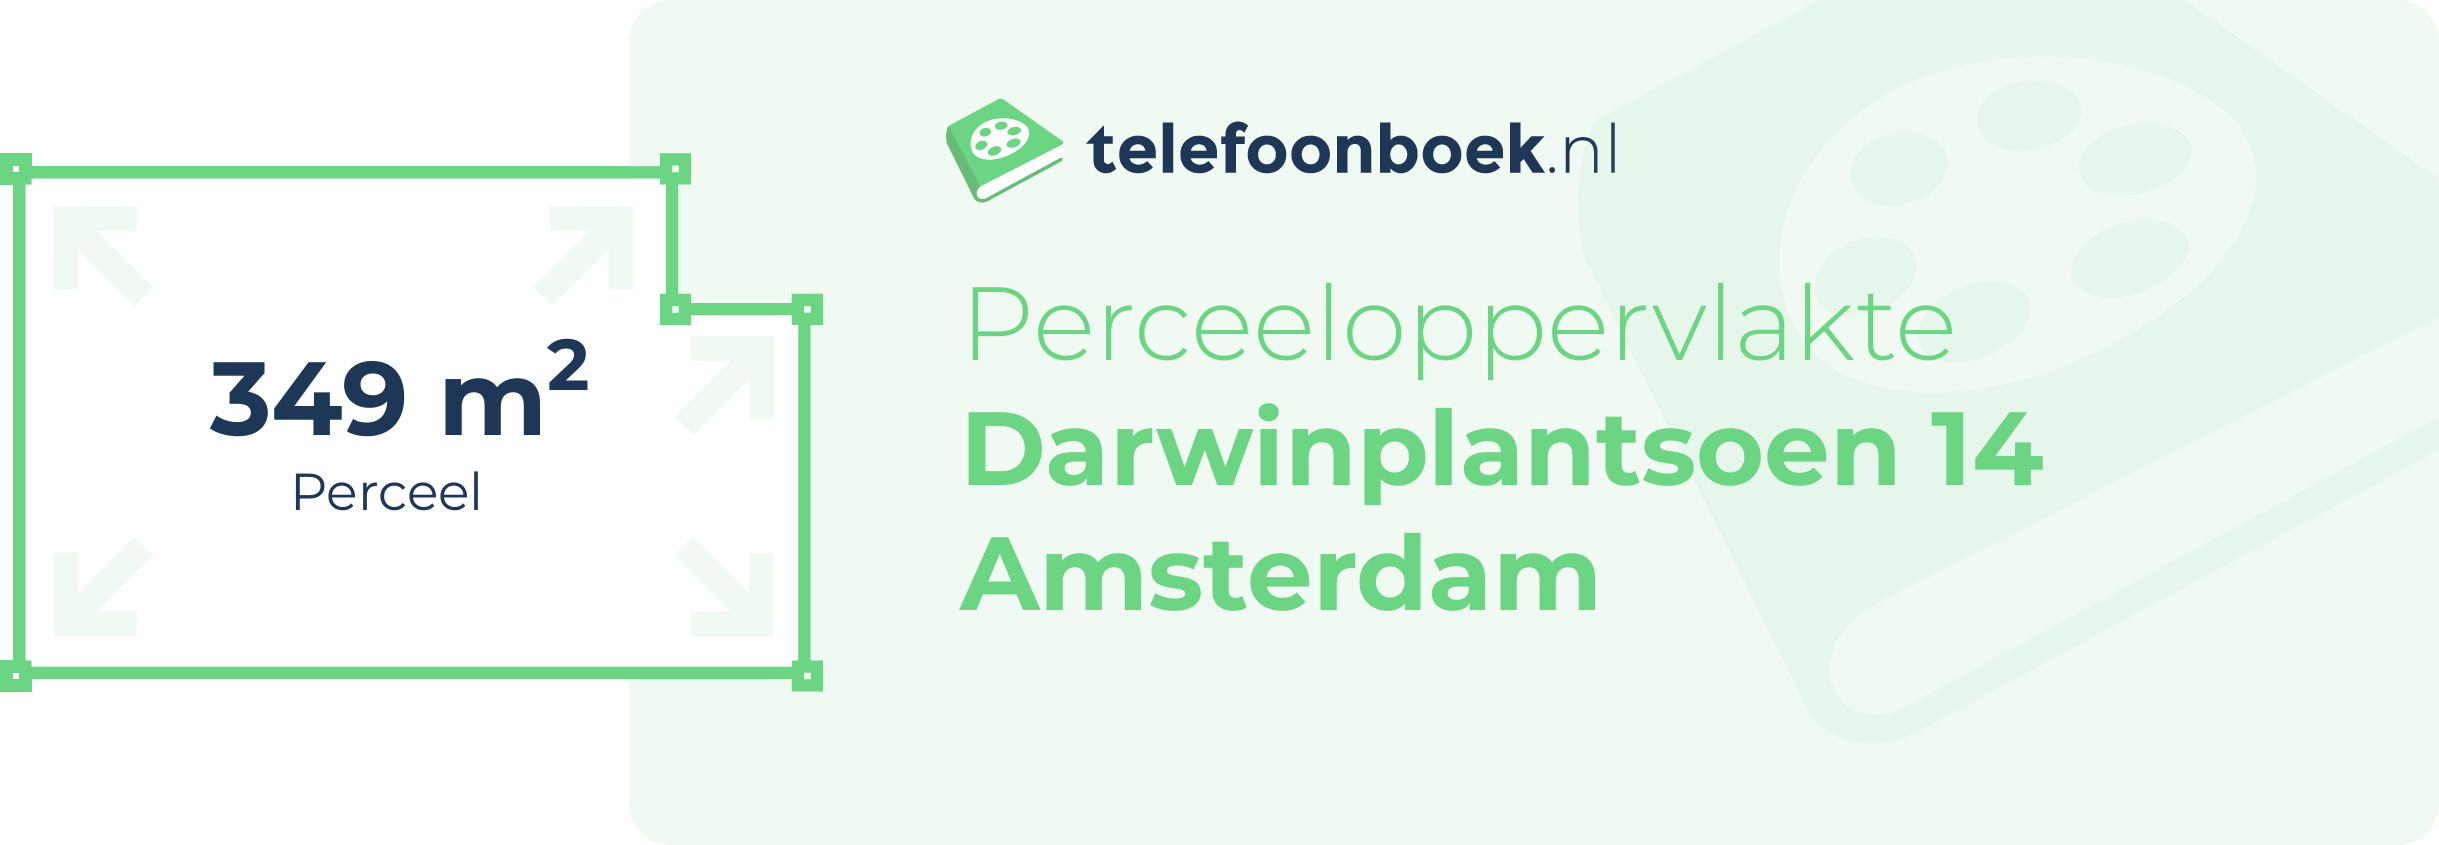 Perceeloppervlakte Darwinplantsoen 14 Amsterdam